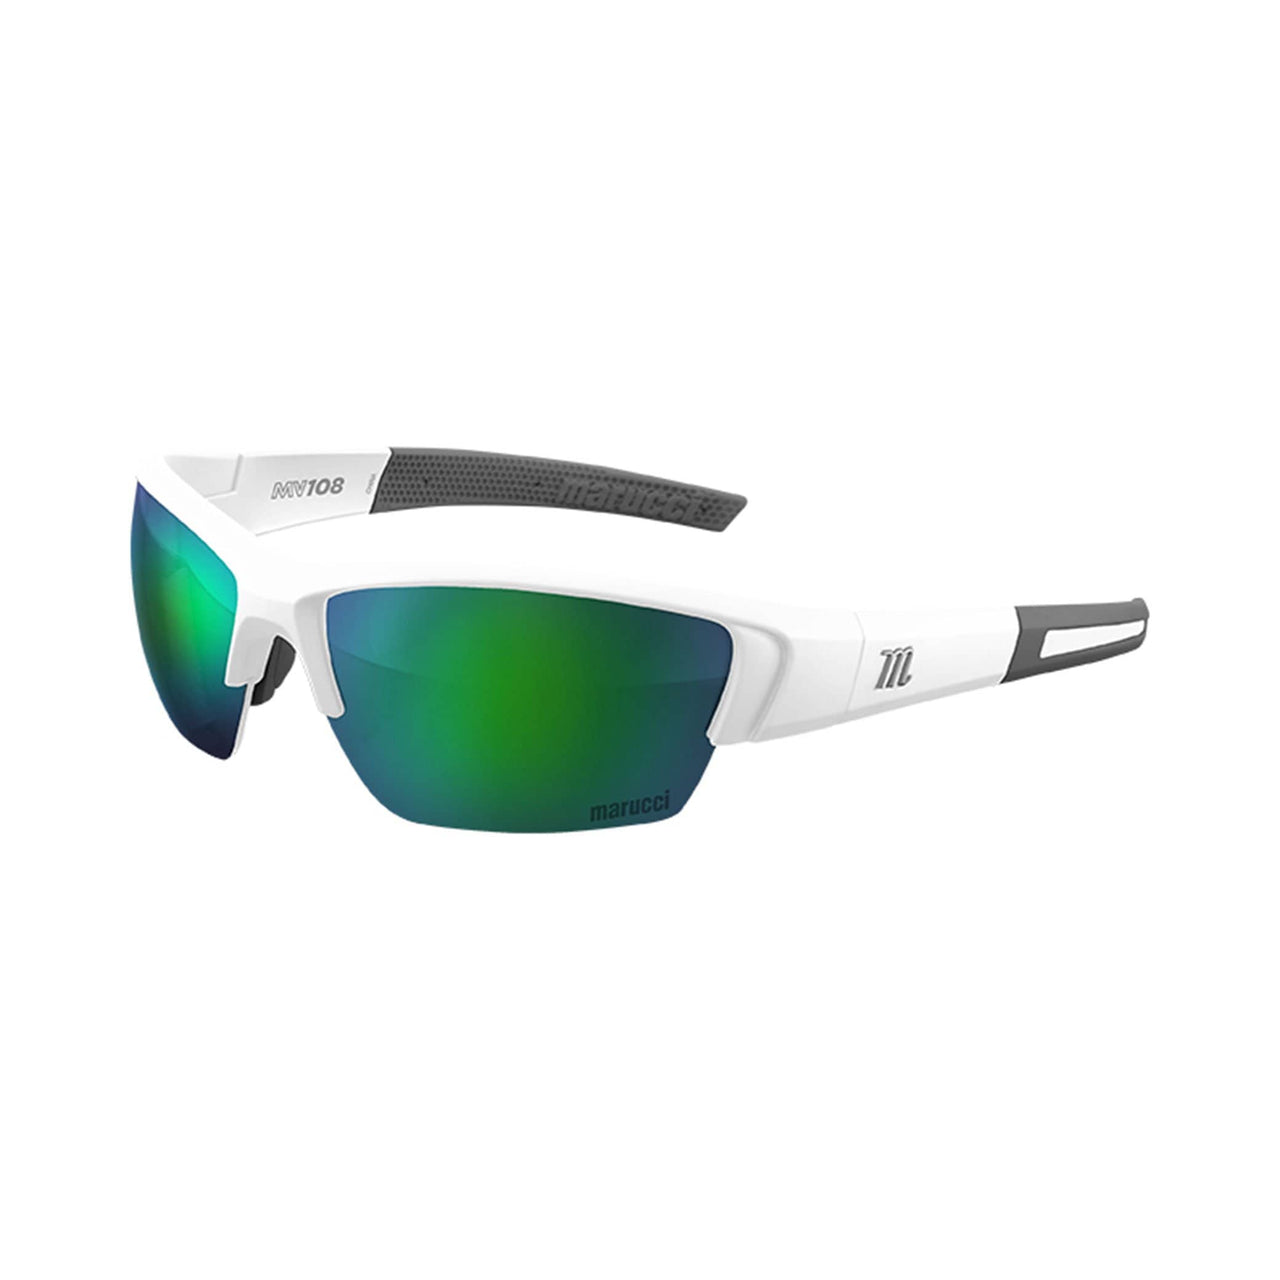 Marucci Sunglasses Matte White - Green Lens with Green Mirror Marucci MV108 Performance Sunglasses